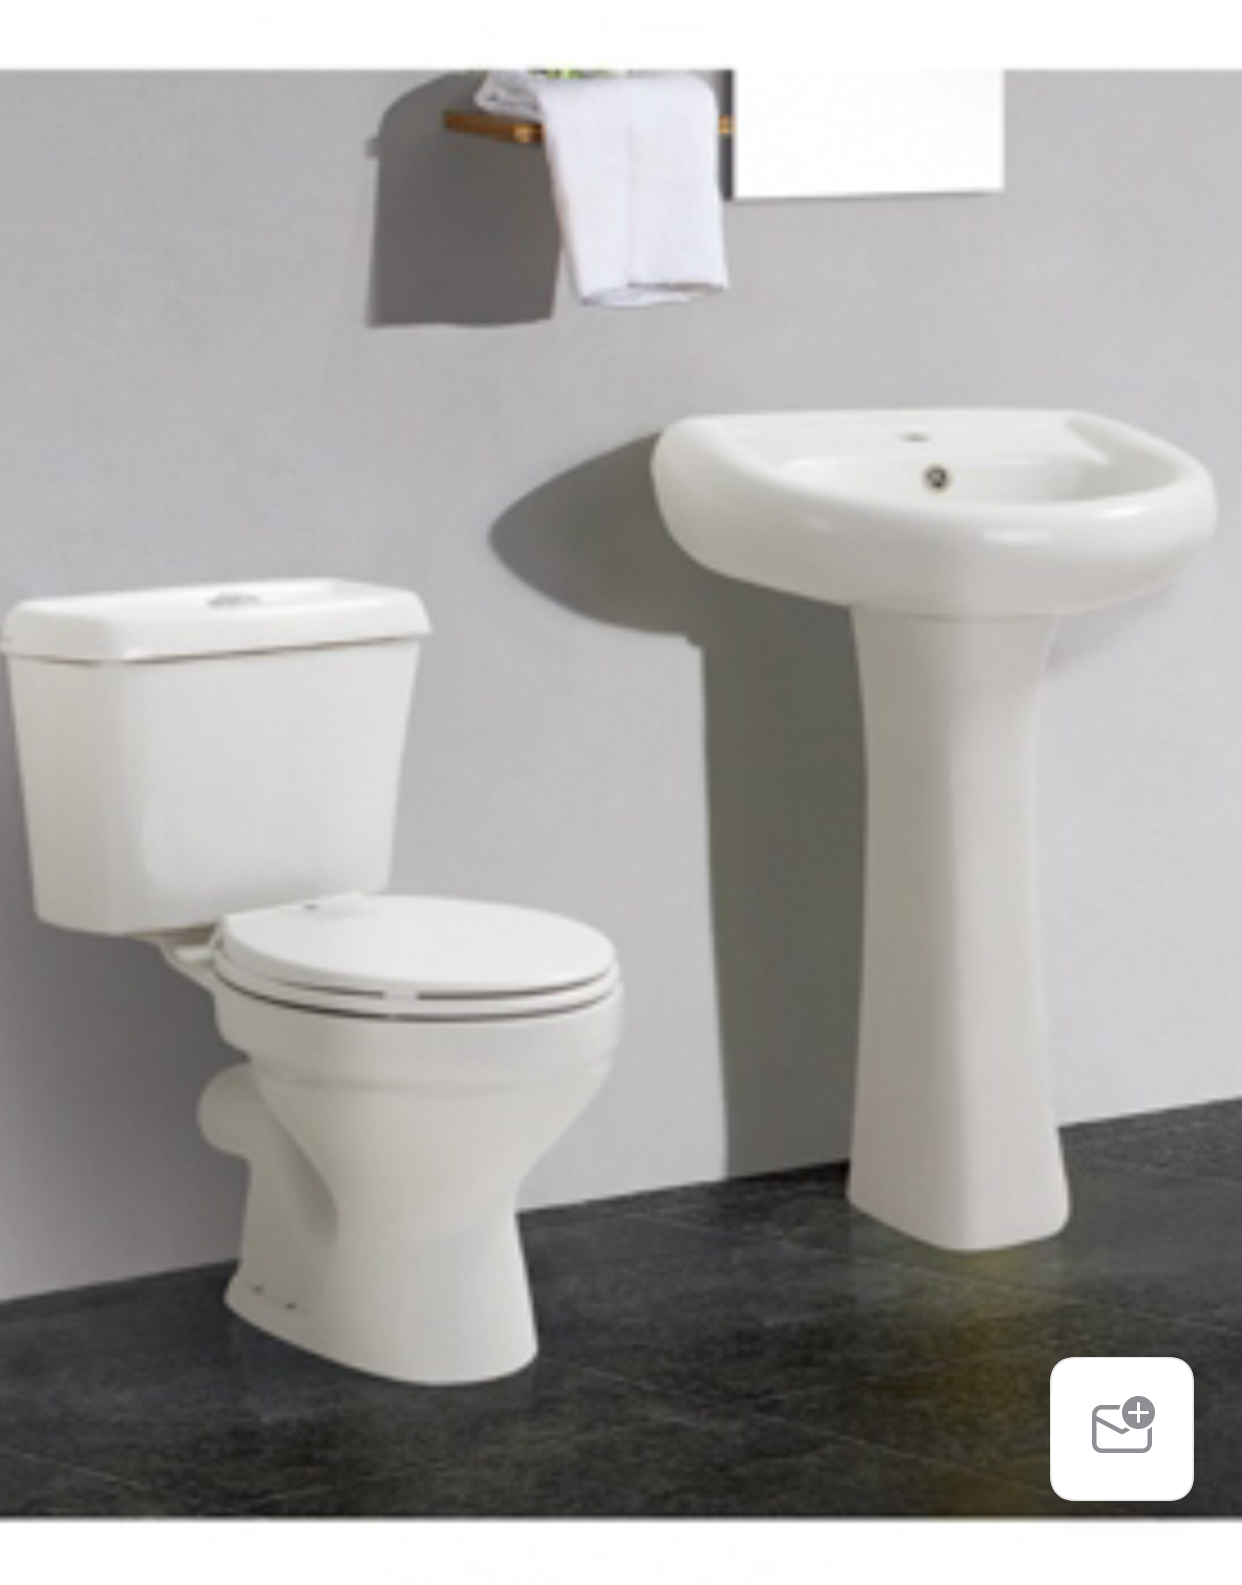 BT-CC03 England Mini-set WC – Bathrooms365 – Bathroom fittings supply company in Nigeria